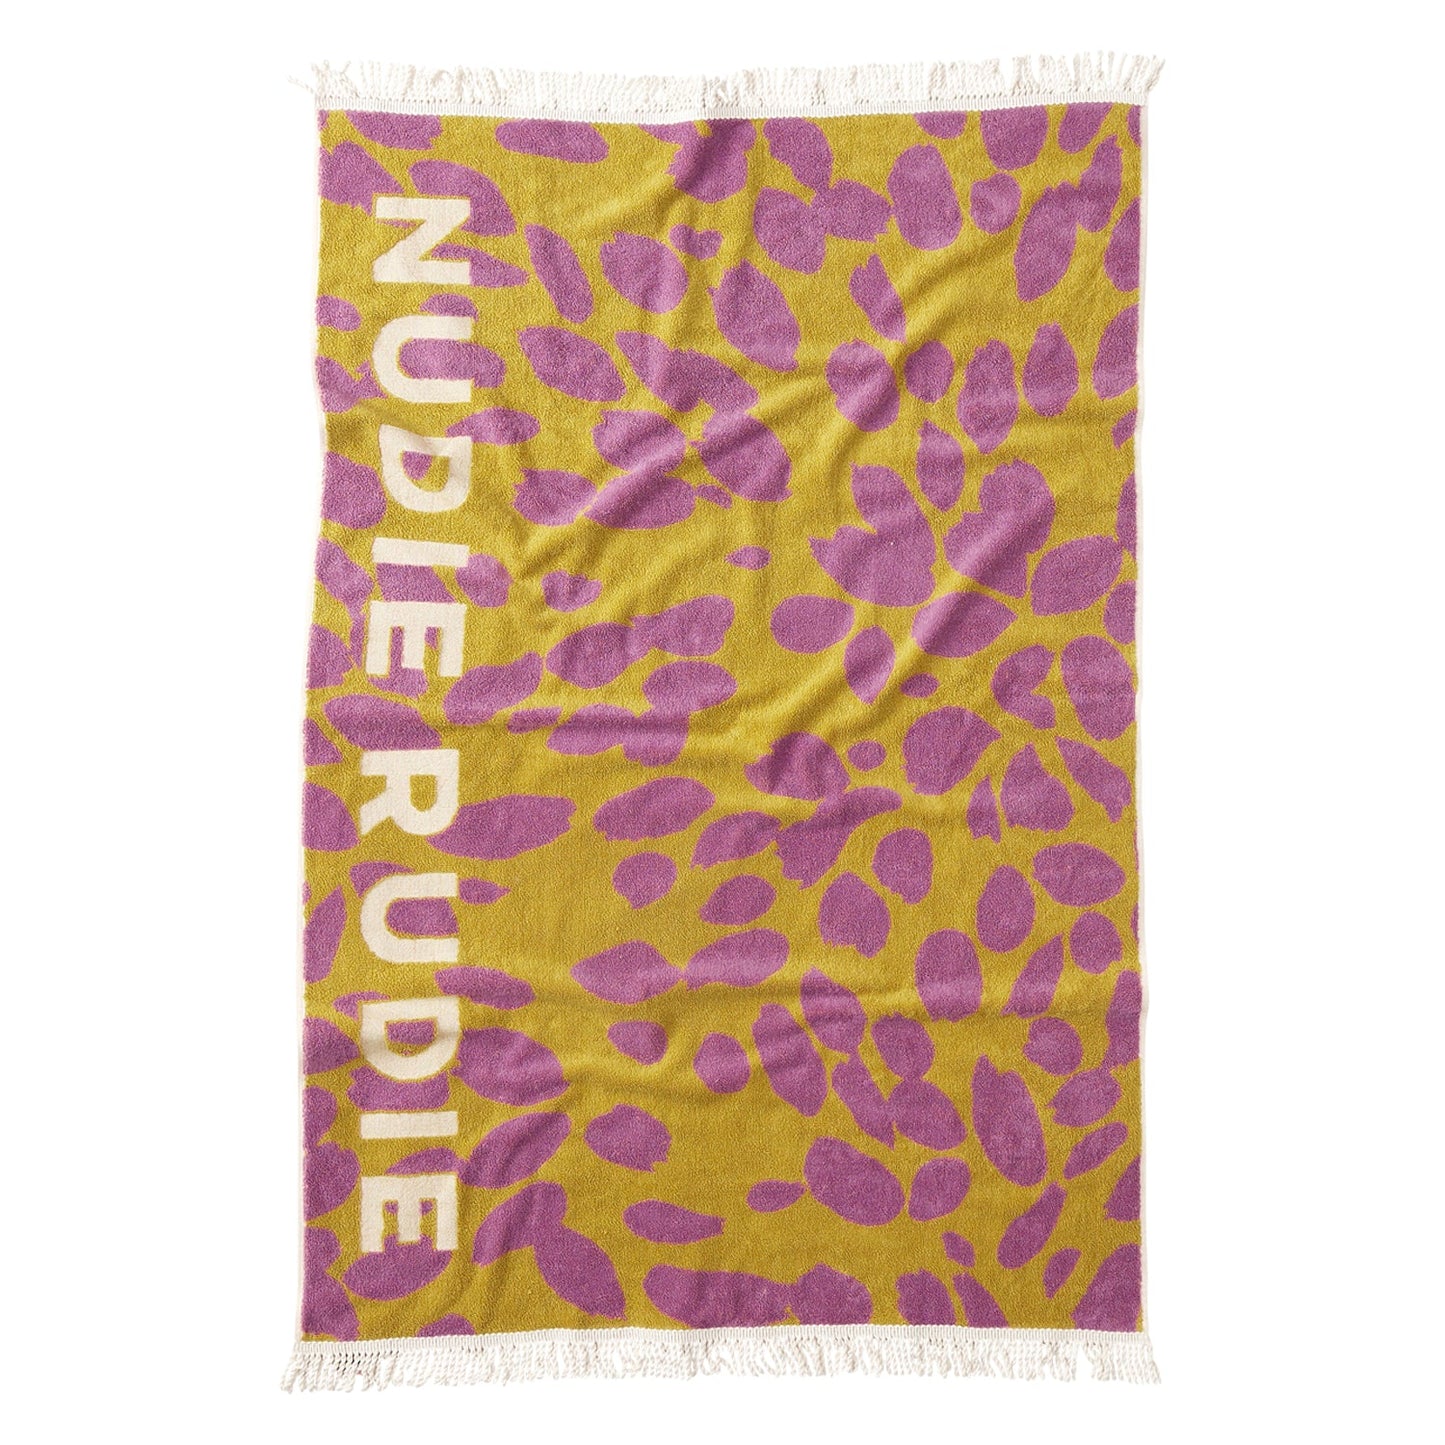 Hermosa Nudie Rudie Towel - Turmeric